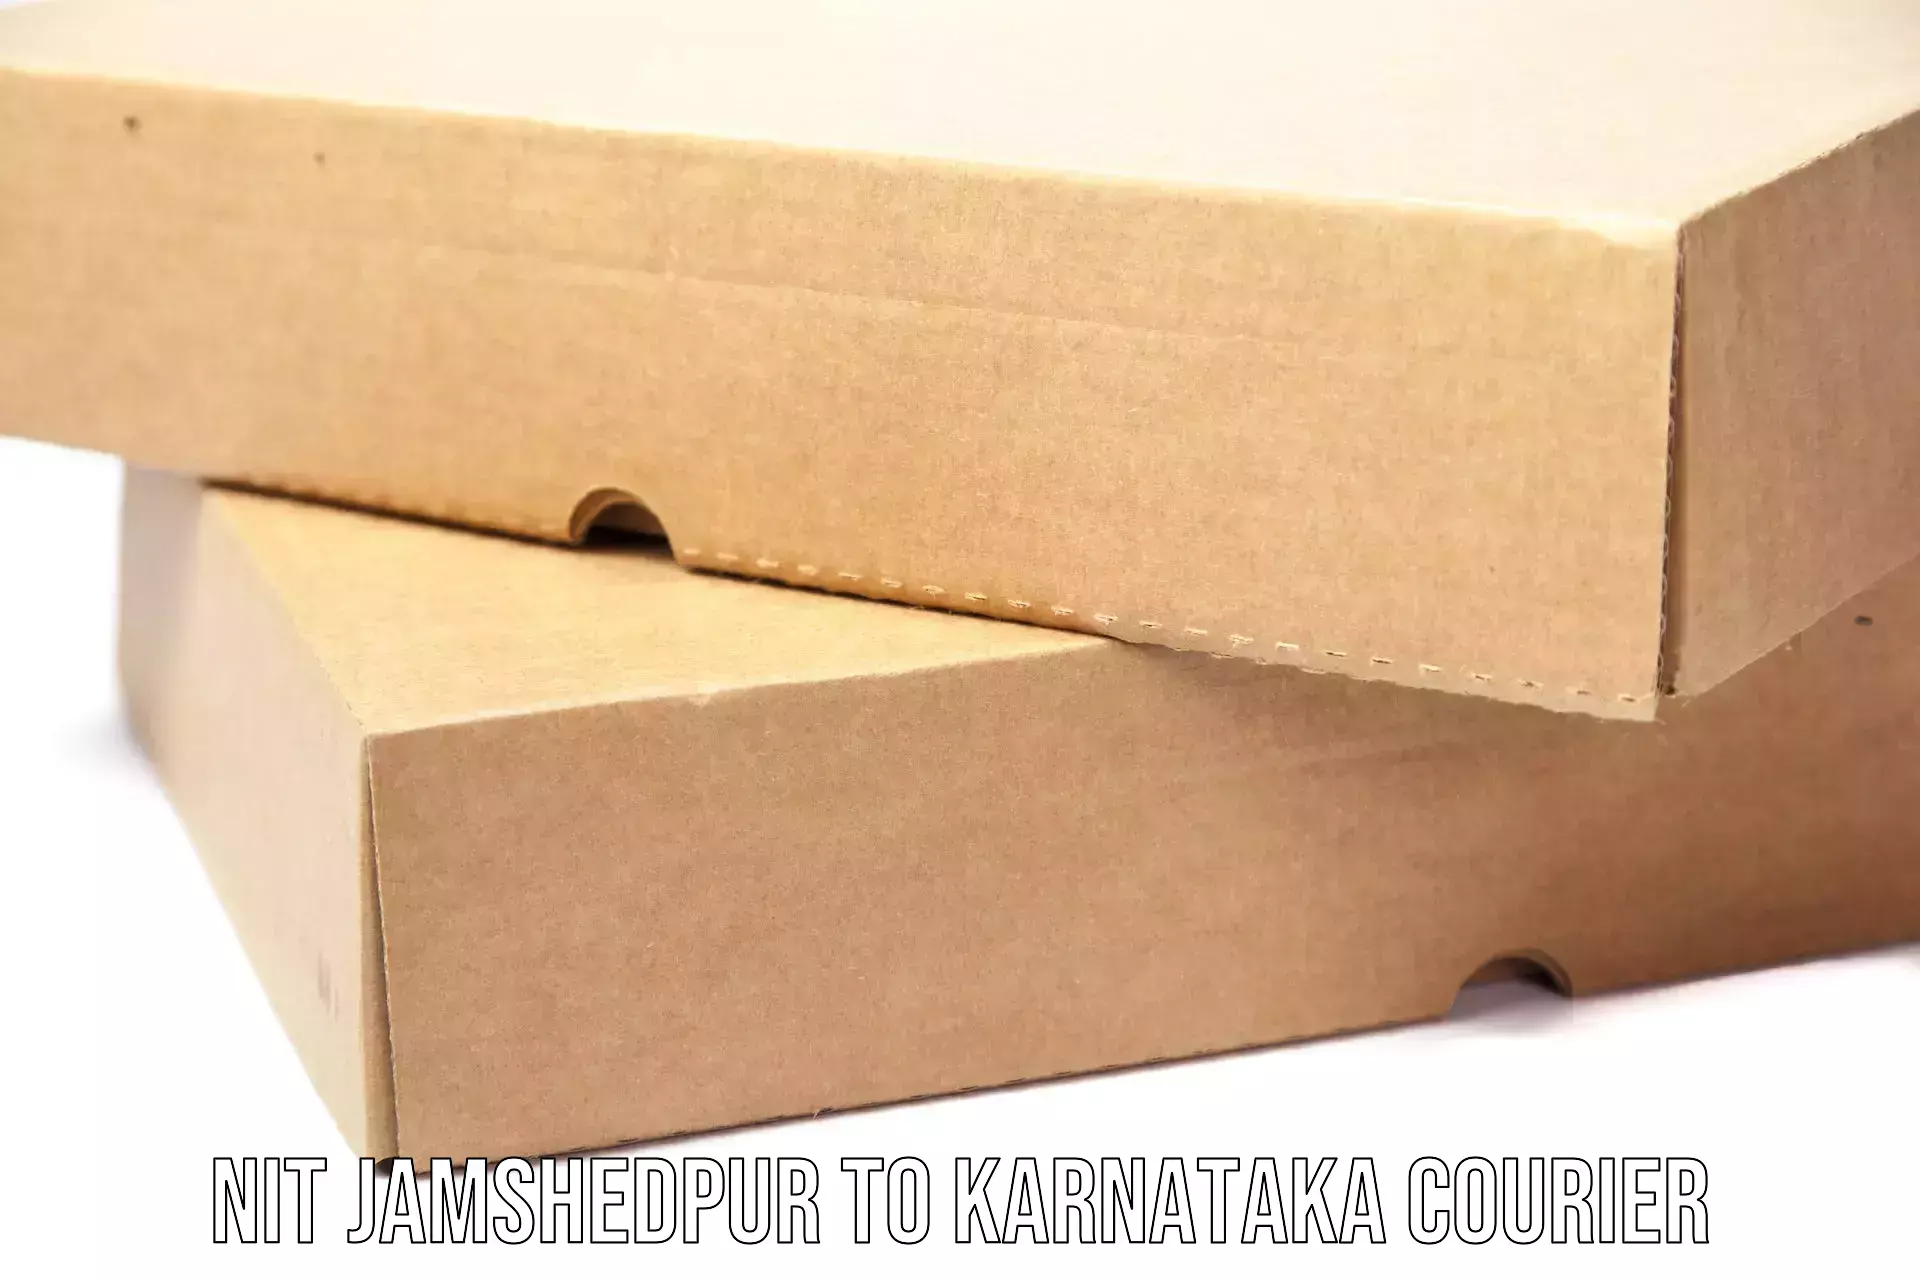 Efficient parcel service NIT Jamshedpur to Kundapura